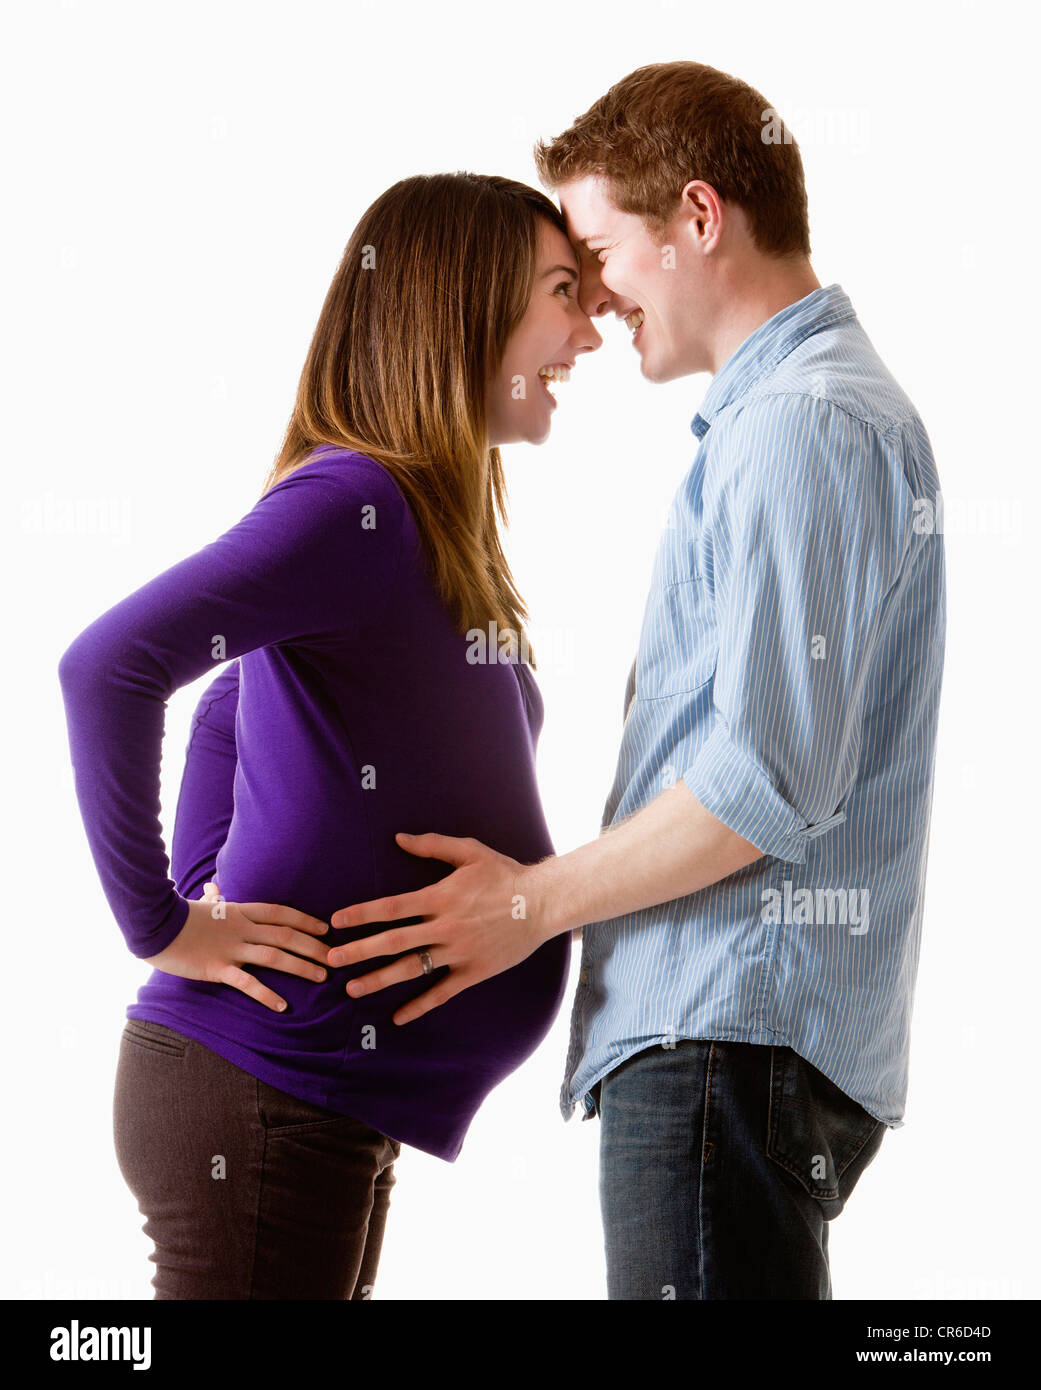 Man embracing pregnant woman, studio shot Banque D'Images